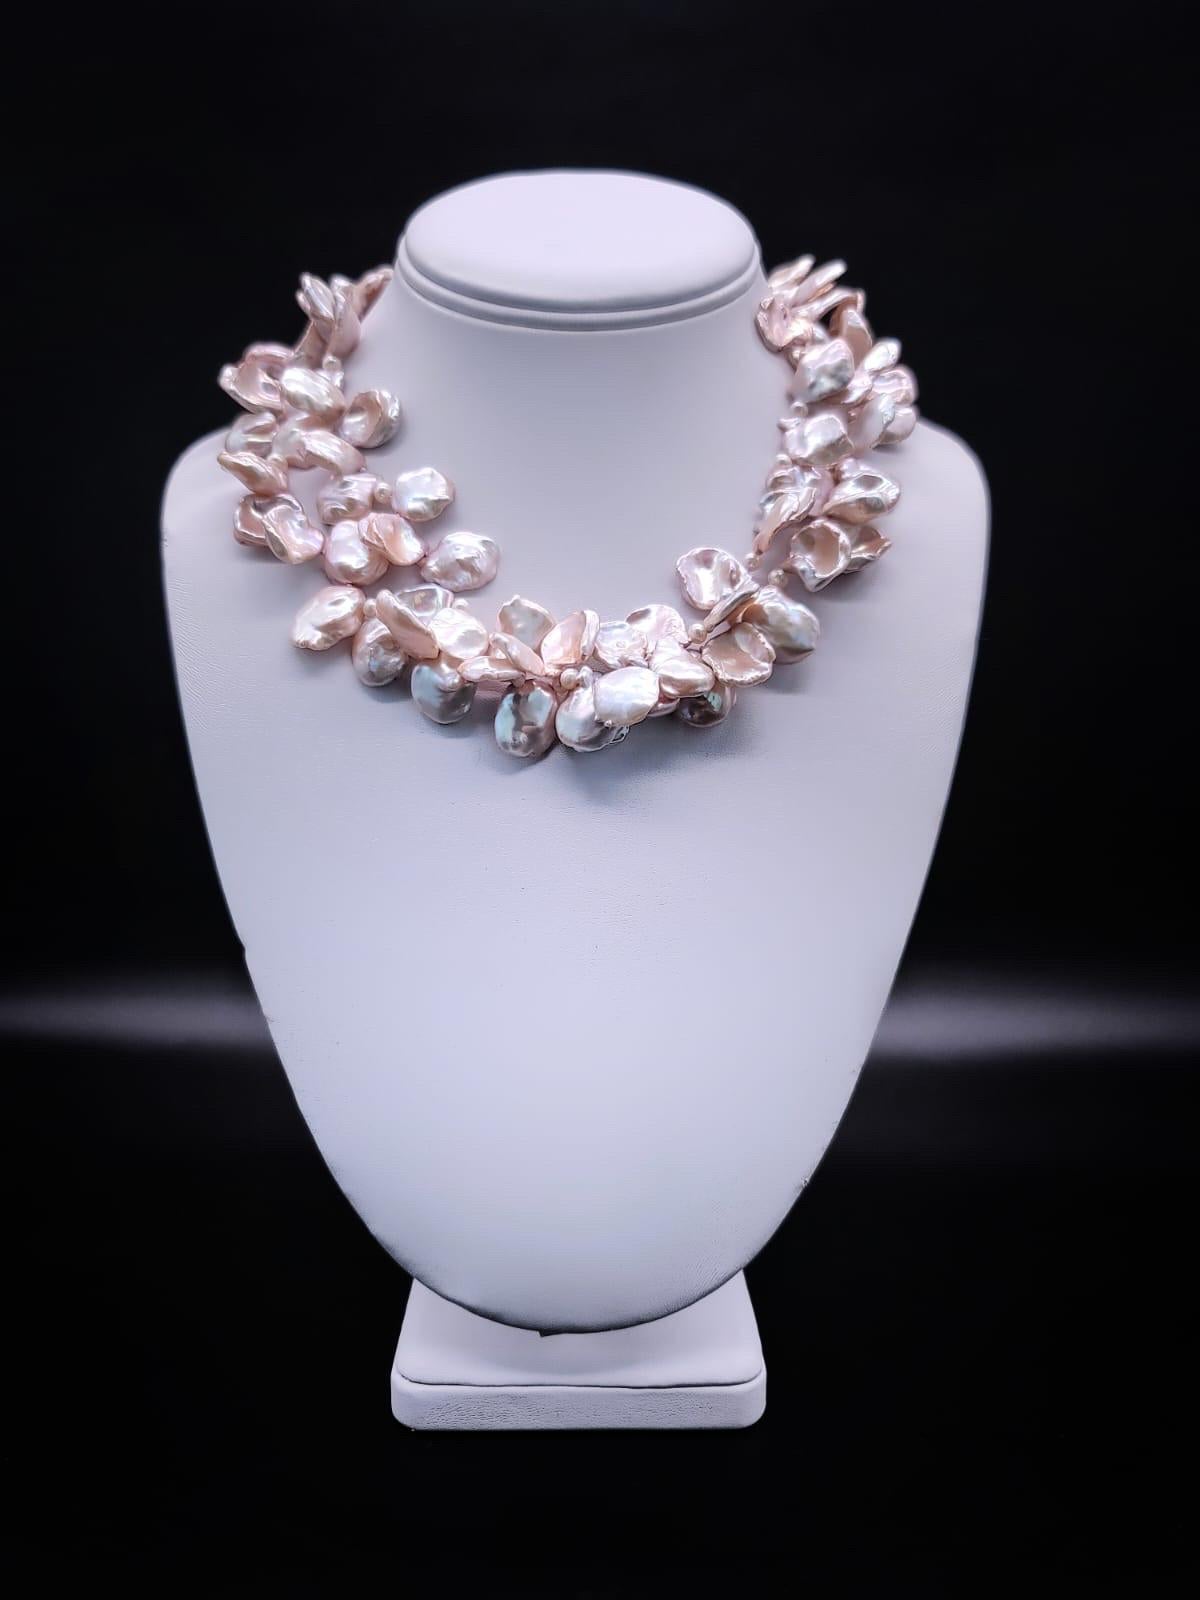 Einzigartig

Diese 2-reihige Süßwasser-Keshi-Perlenkette mit einer geschnitzten italienischen Kamee im Vintage-Stil mit Blumenmotiven ist ein wunderschönes und einzigartiges Schmuckstück, das zeitlose Eleganz ausstrahlt. Die Halskette besteht aus